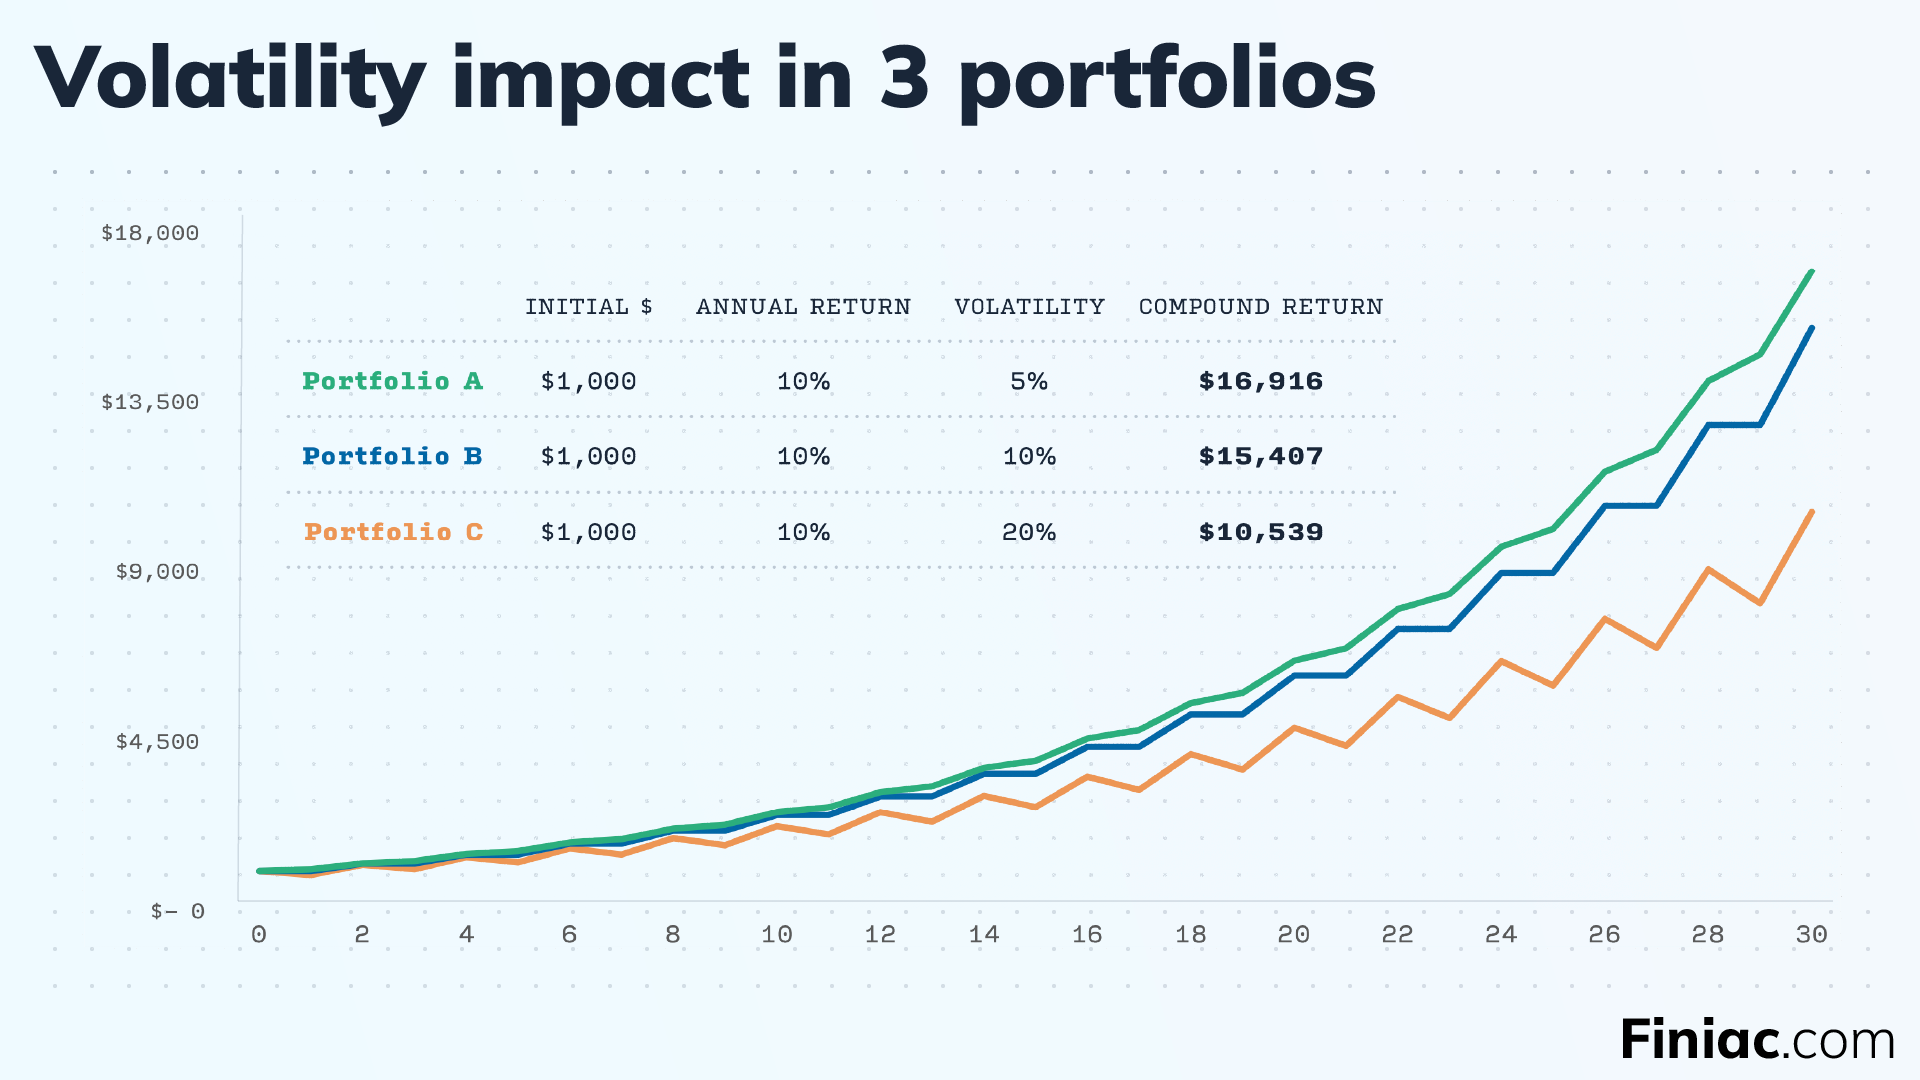 See the impact of volatility on 3 similar portfolios.